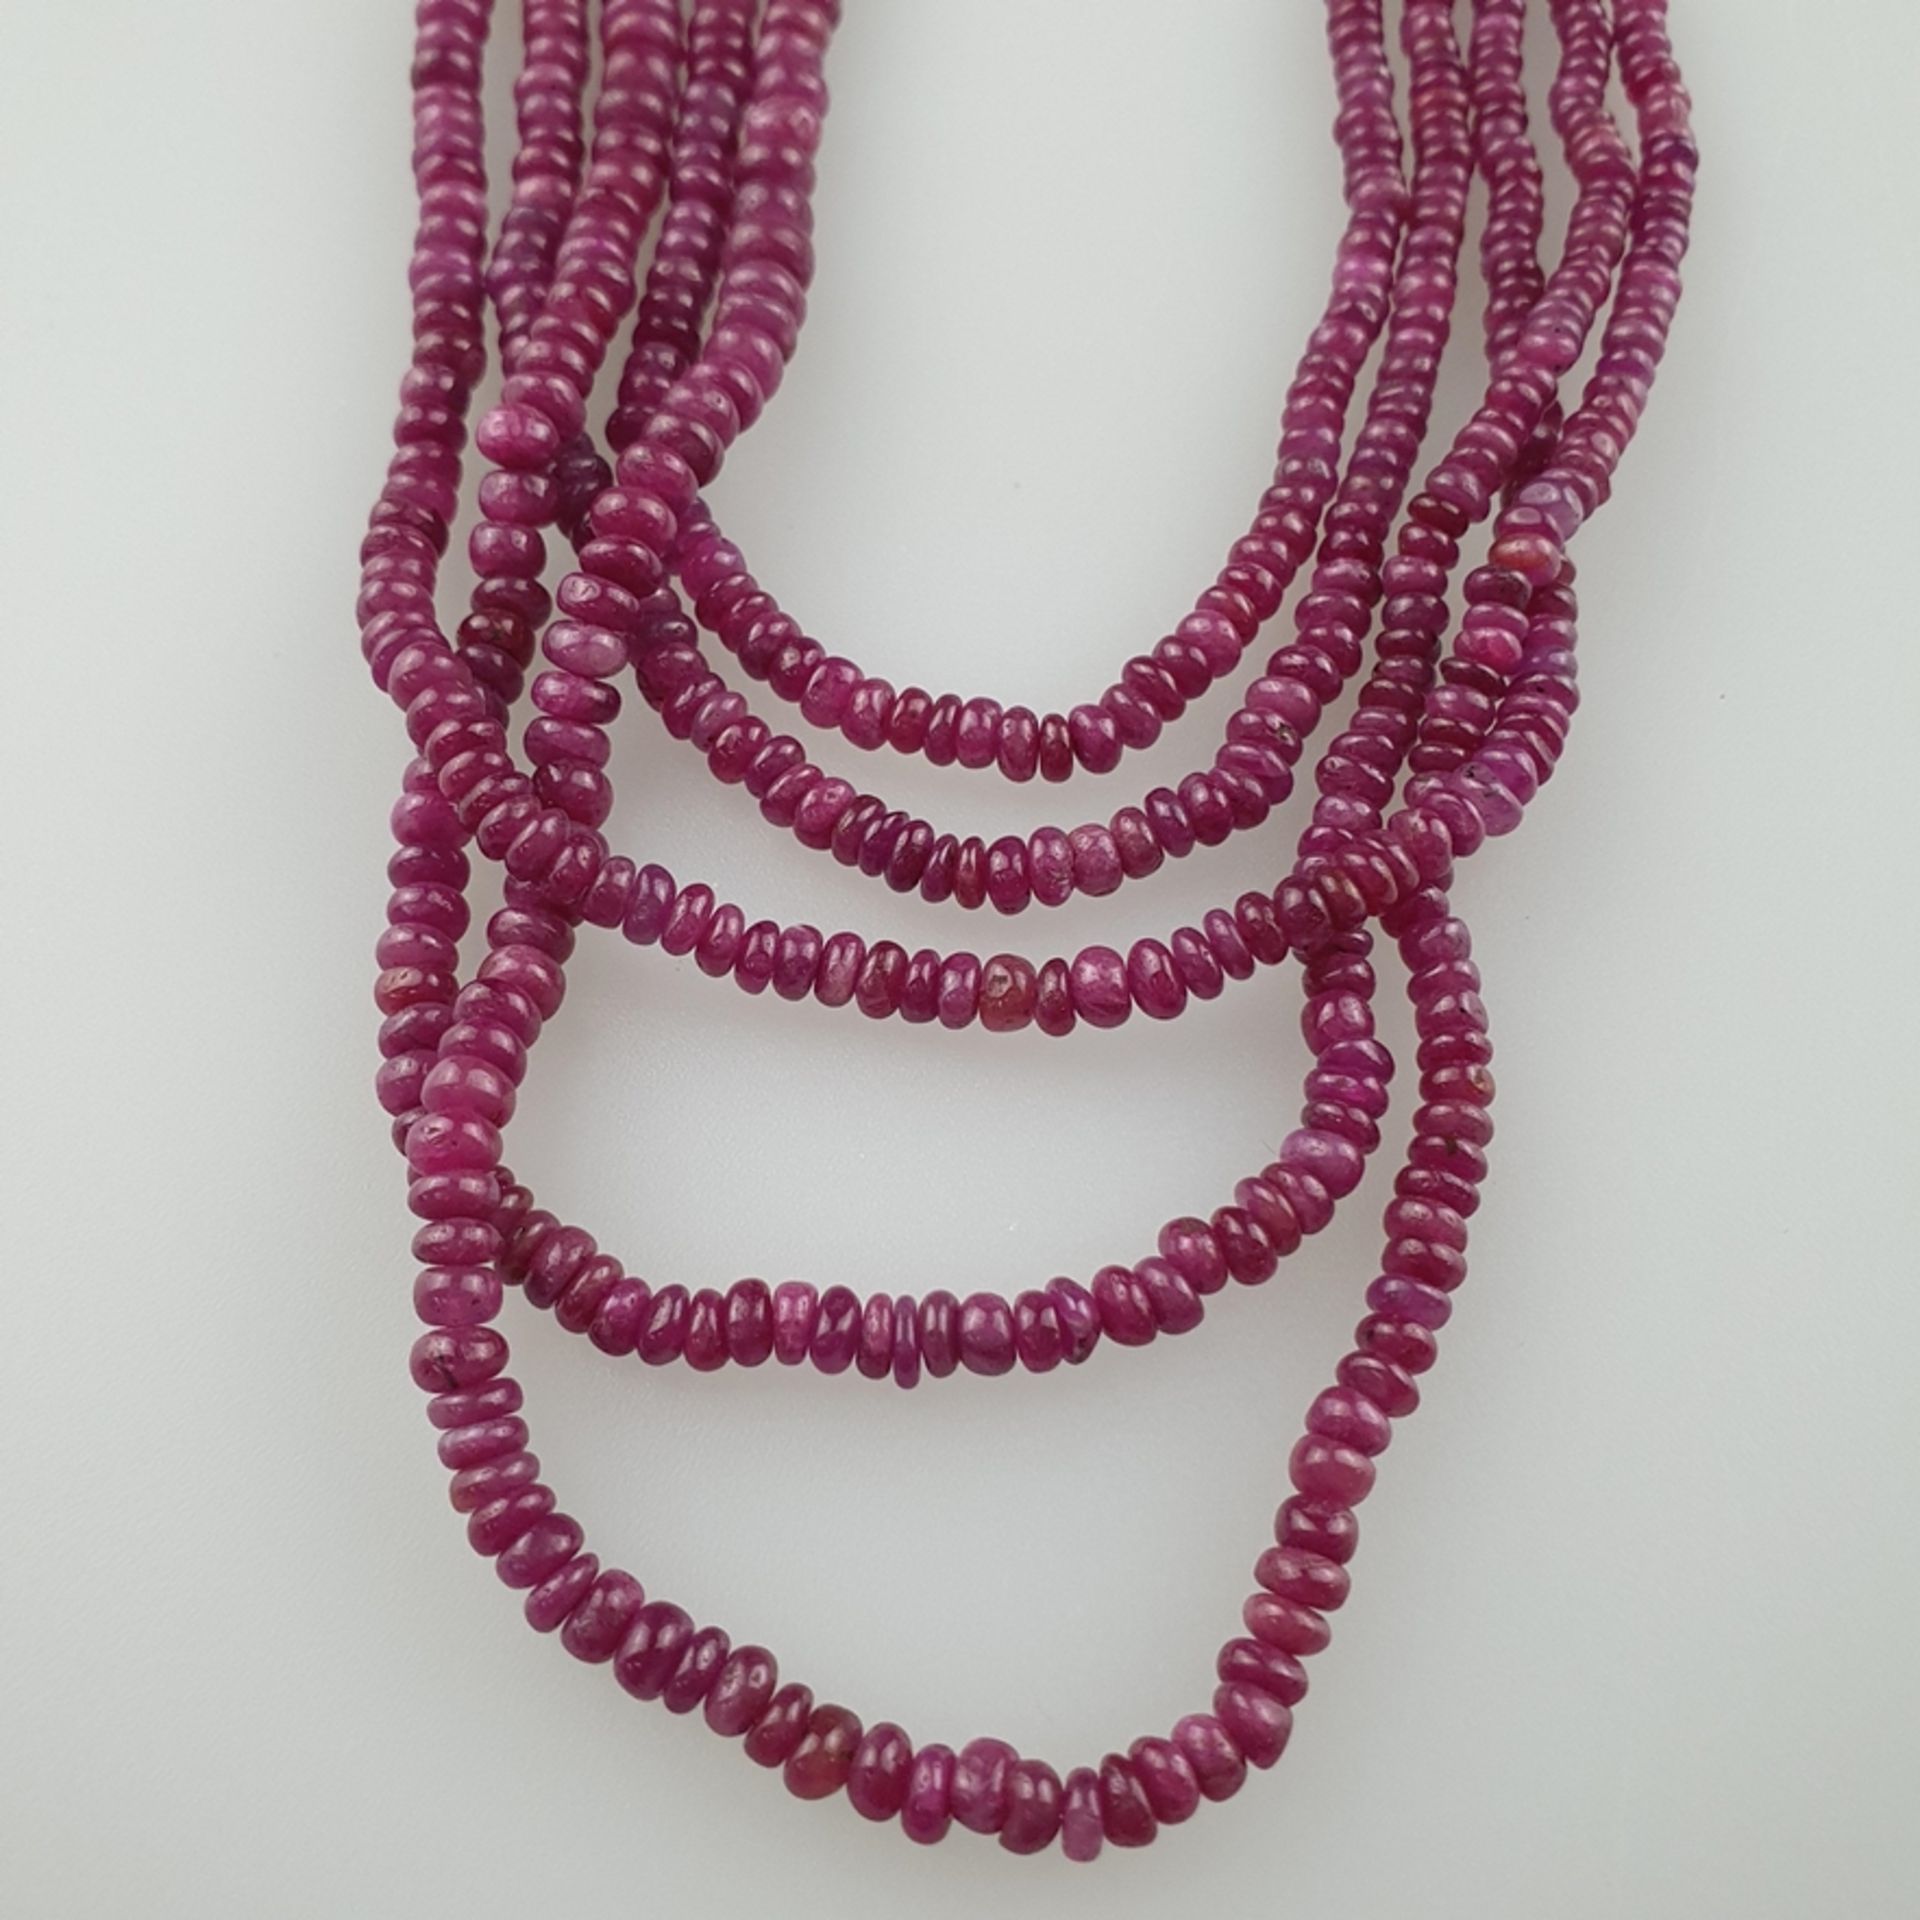 Fünfreihiges Rubin-Collier - Rubin-Rondelle, zusamme | 440cts Five row ruby gemstone necklace with - Bild 2 aus 5